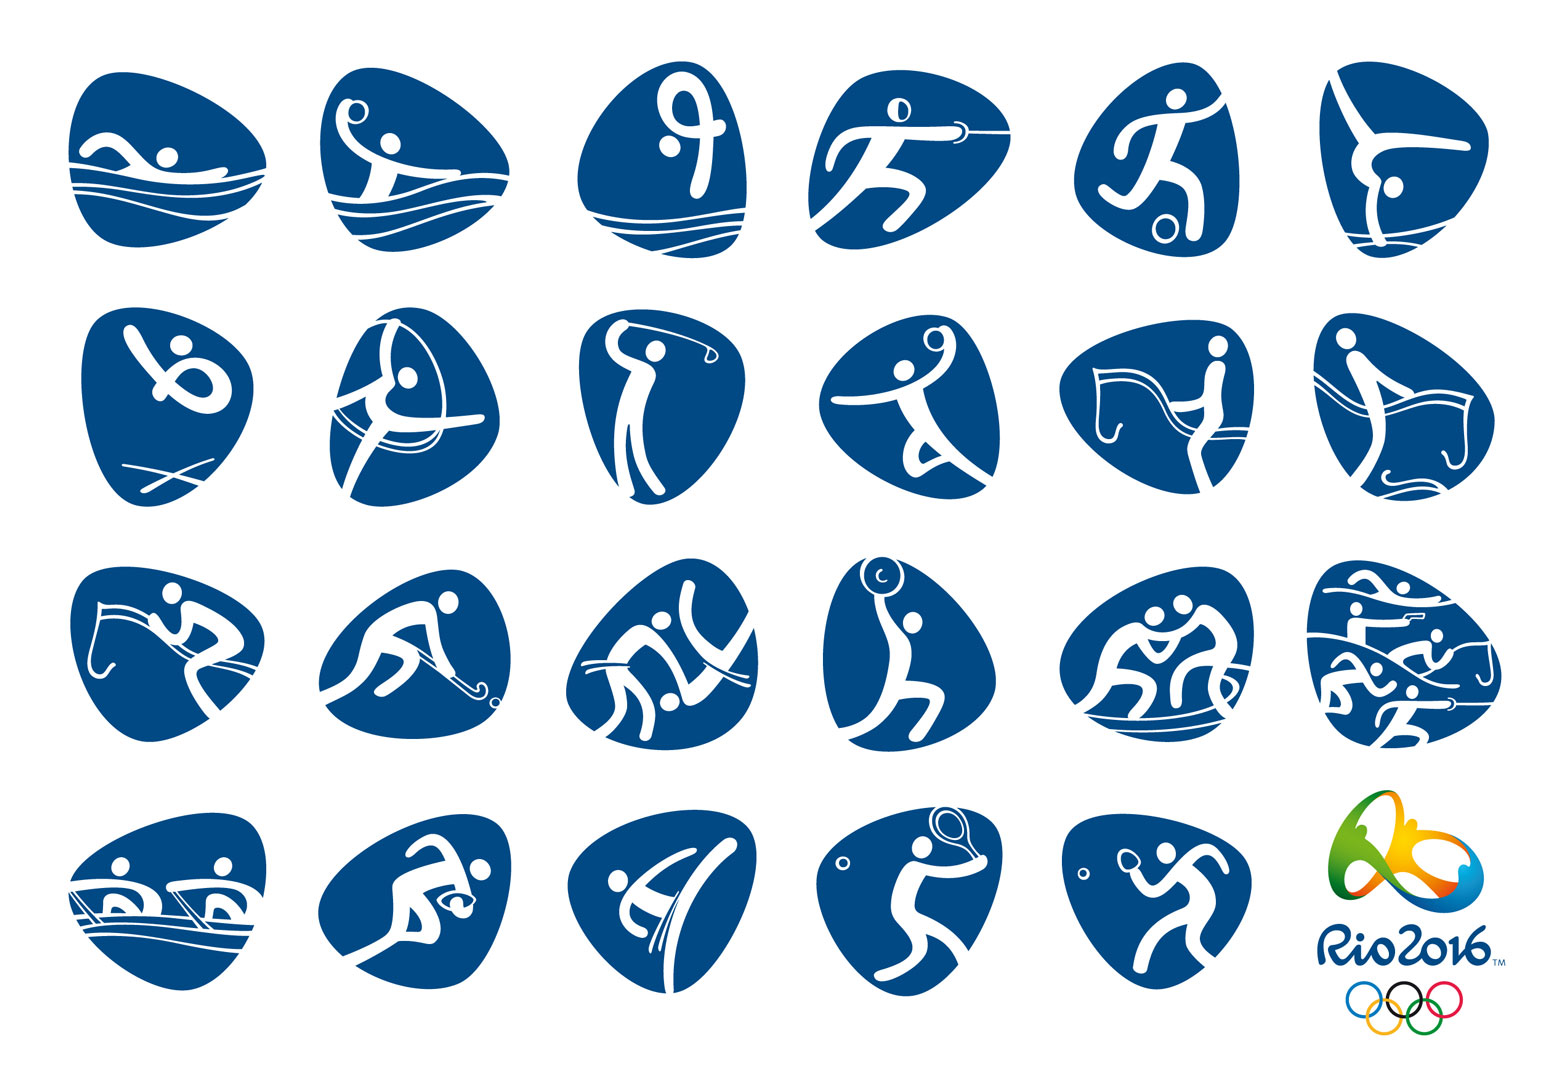 Rio – 2016 olimpiai és paralimpiai piktogramok